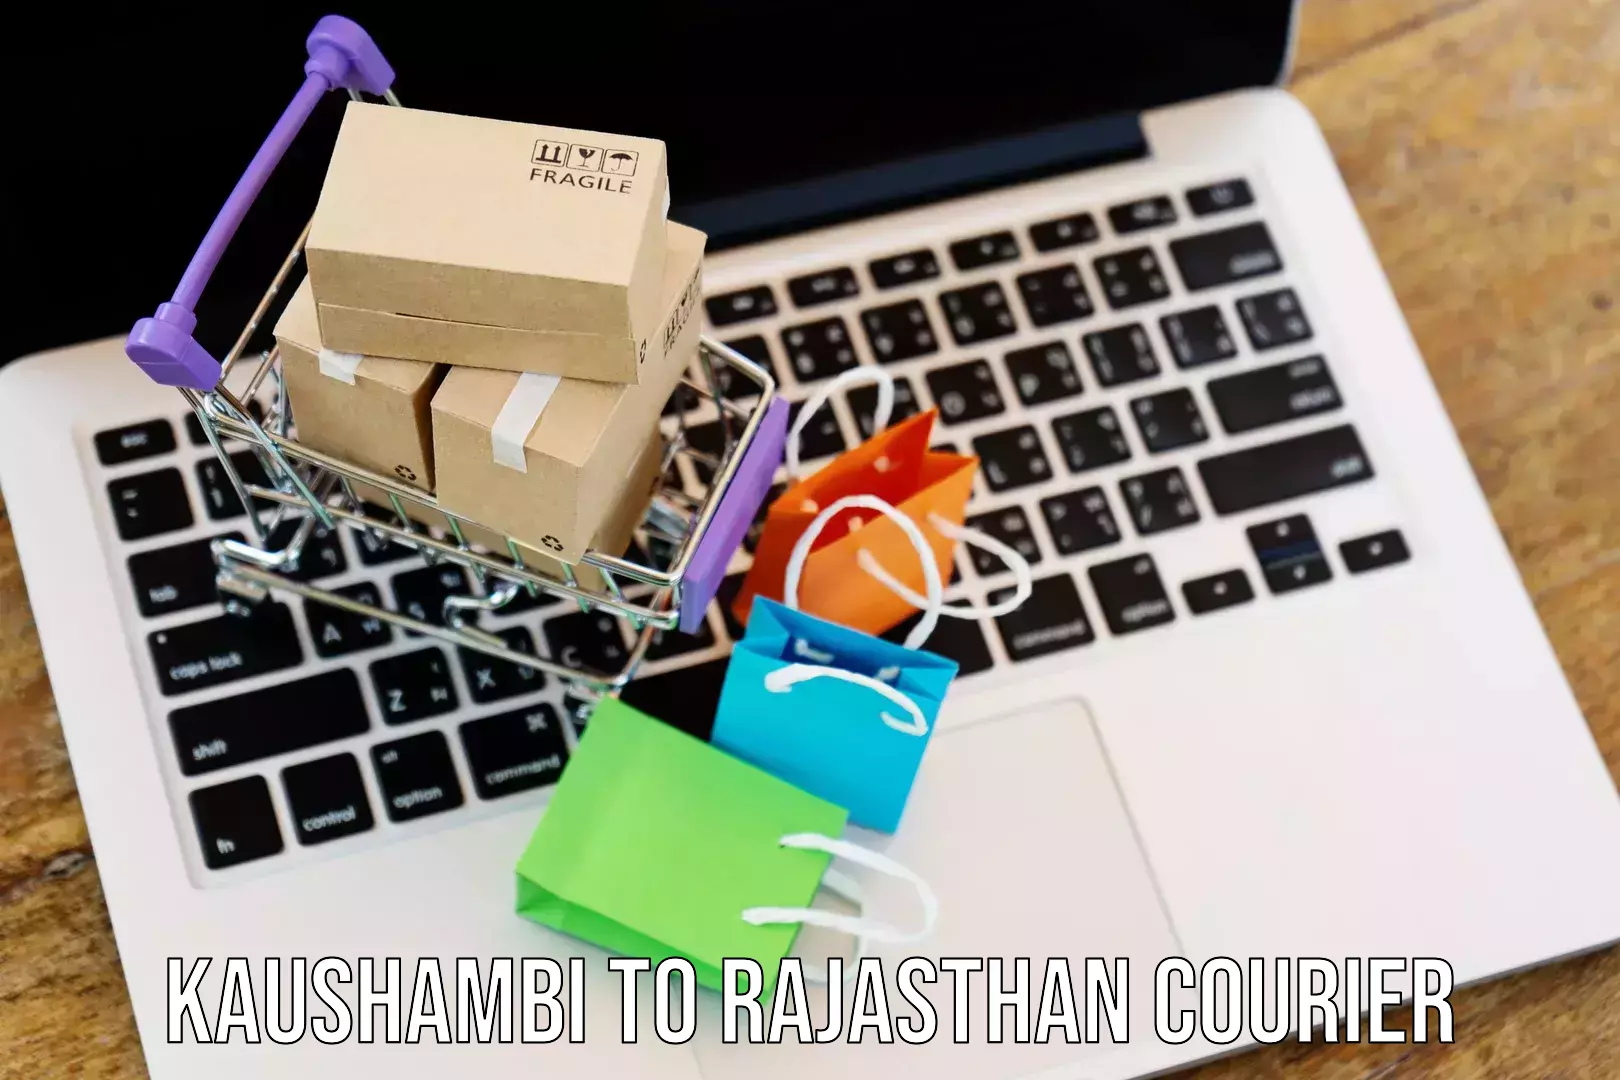 Express package handling Kaushambi to Rajasthan